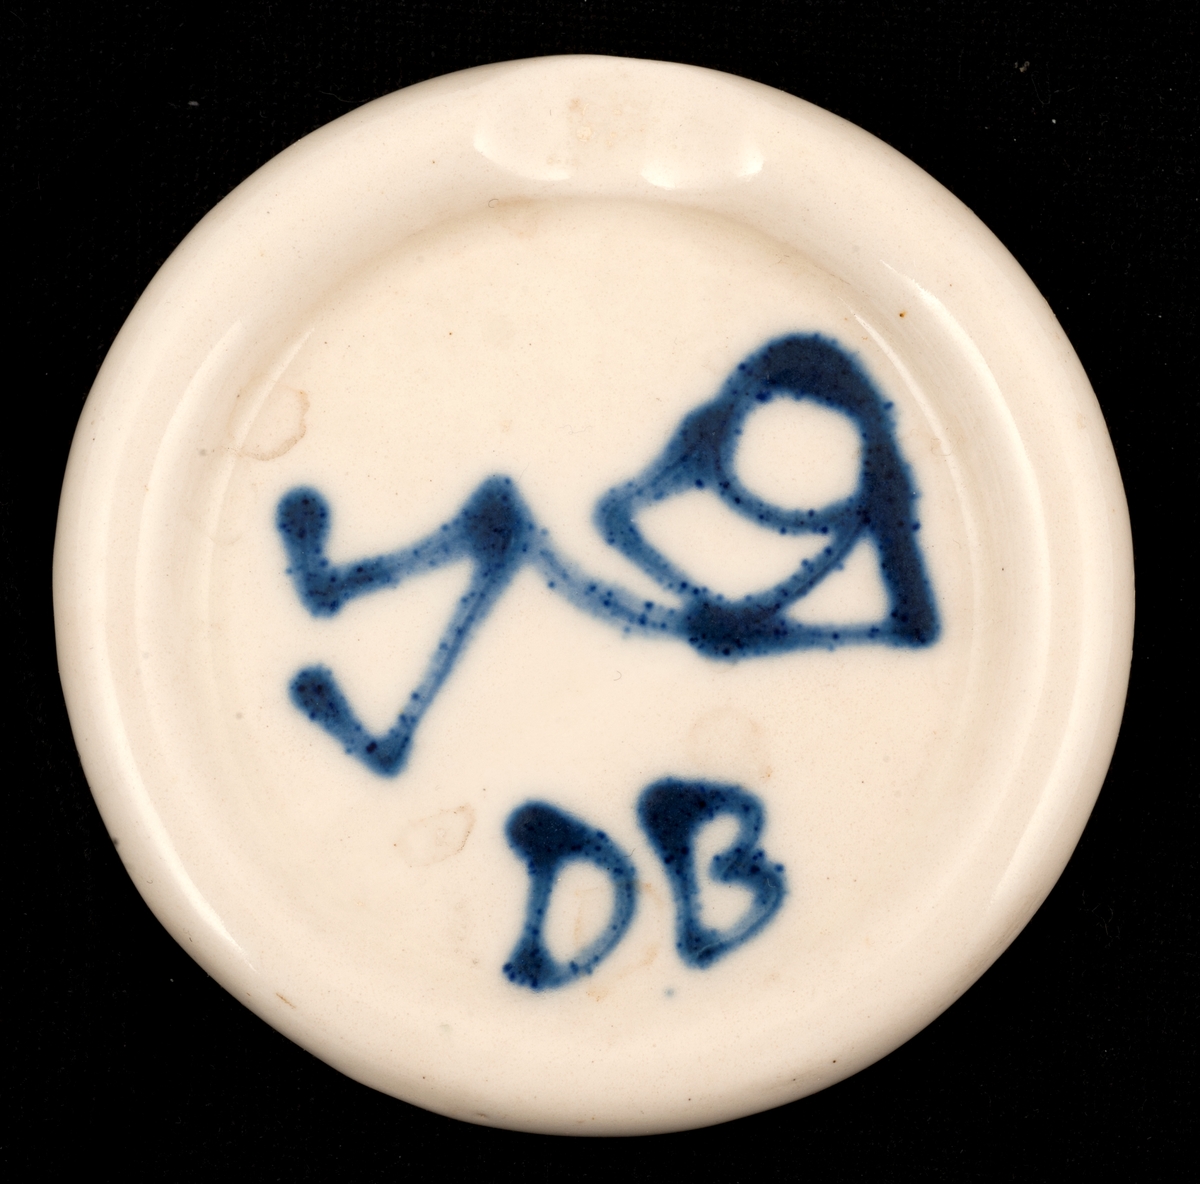 Rundt, hvitt askebeger, påmalt en liggende figur og initialene DB.